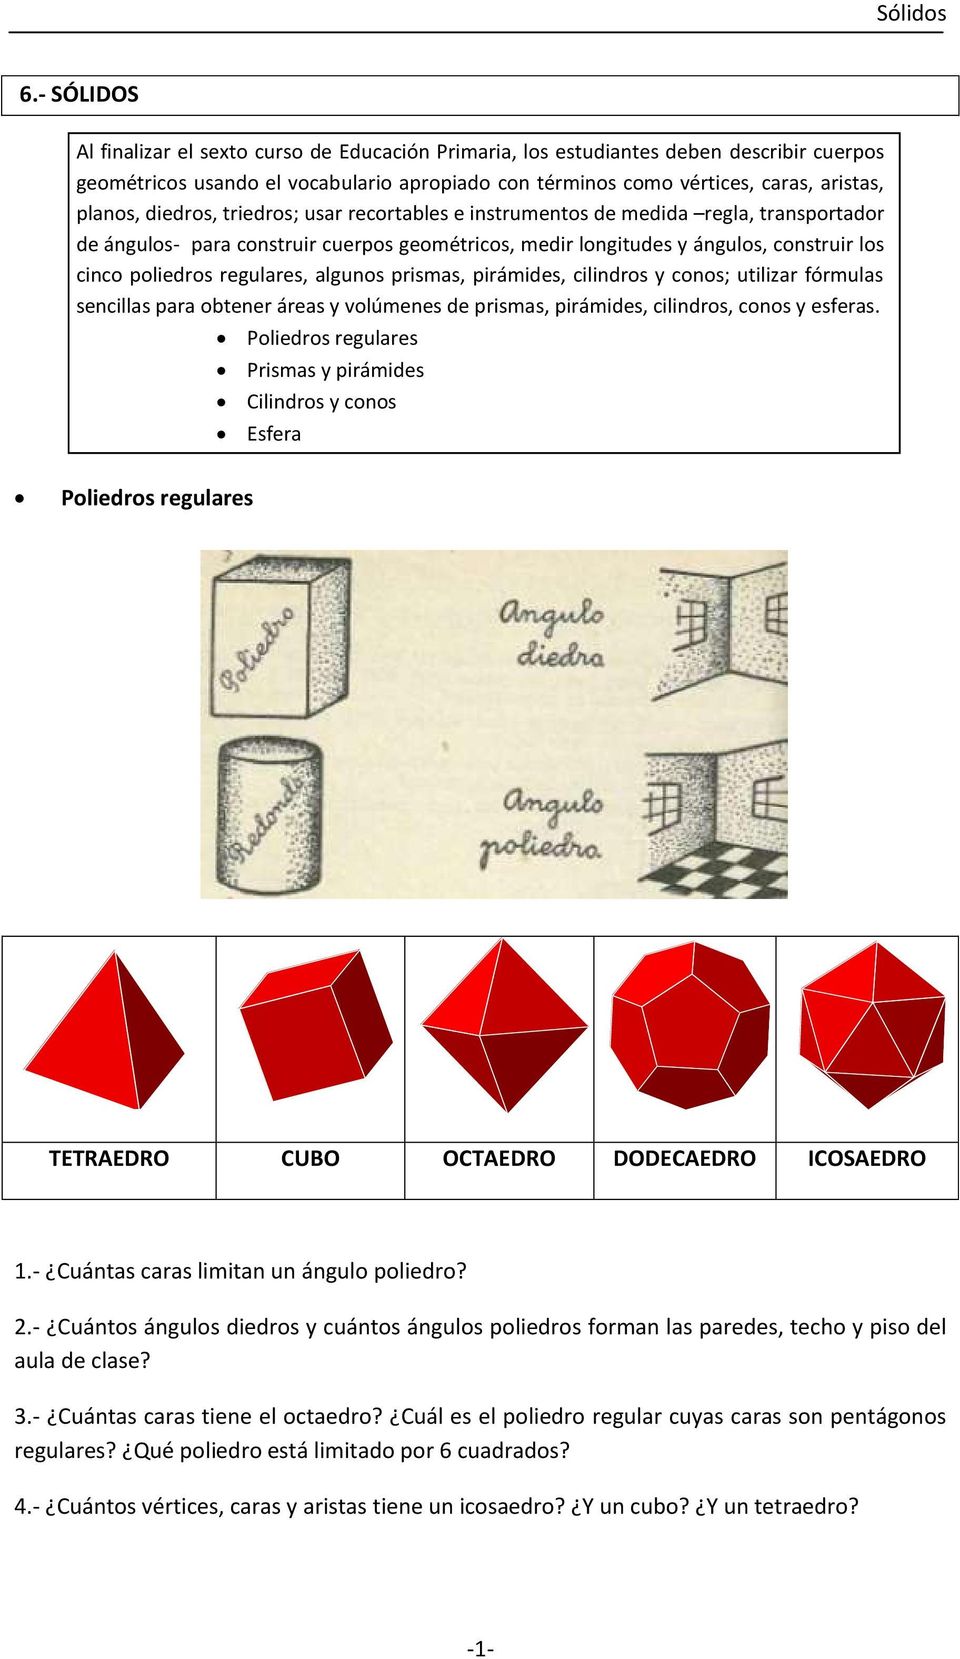 4-CUBO reciproca-tetraedro-w4-Arancione 